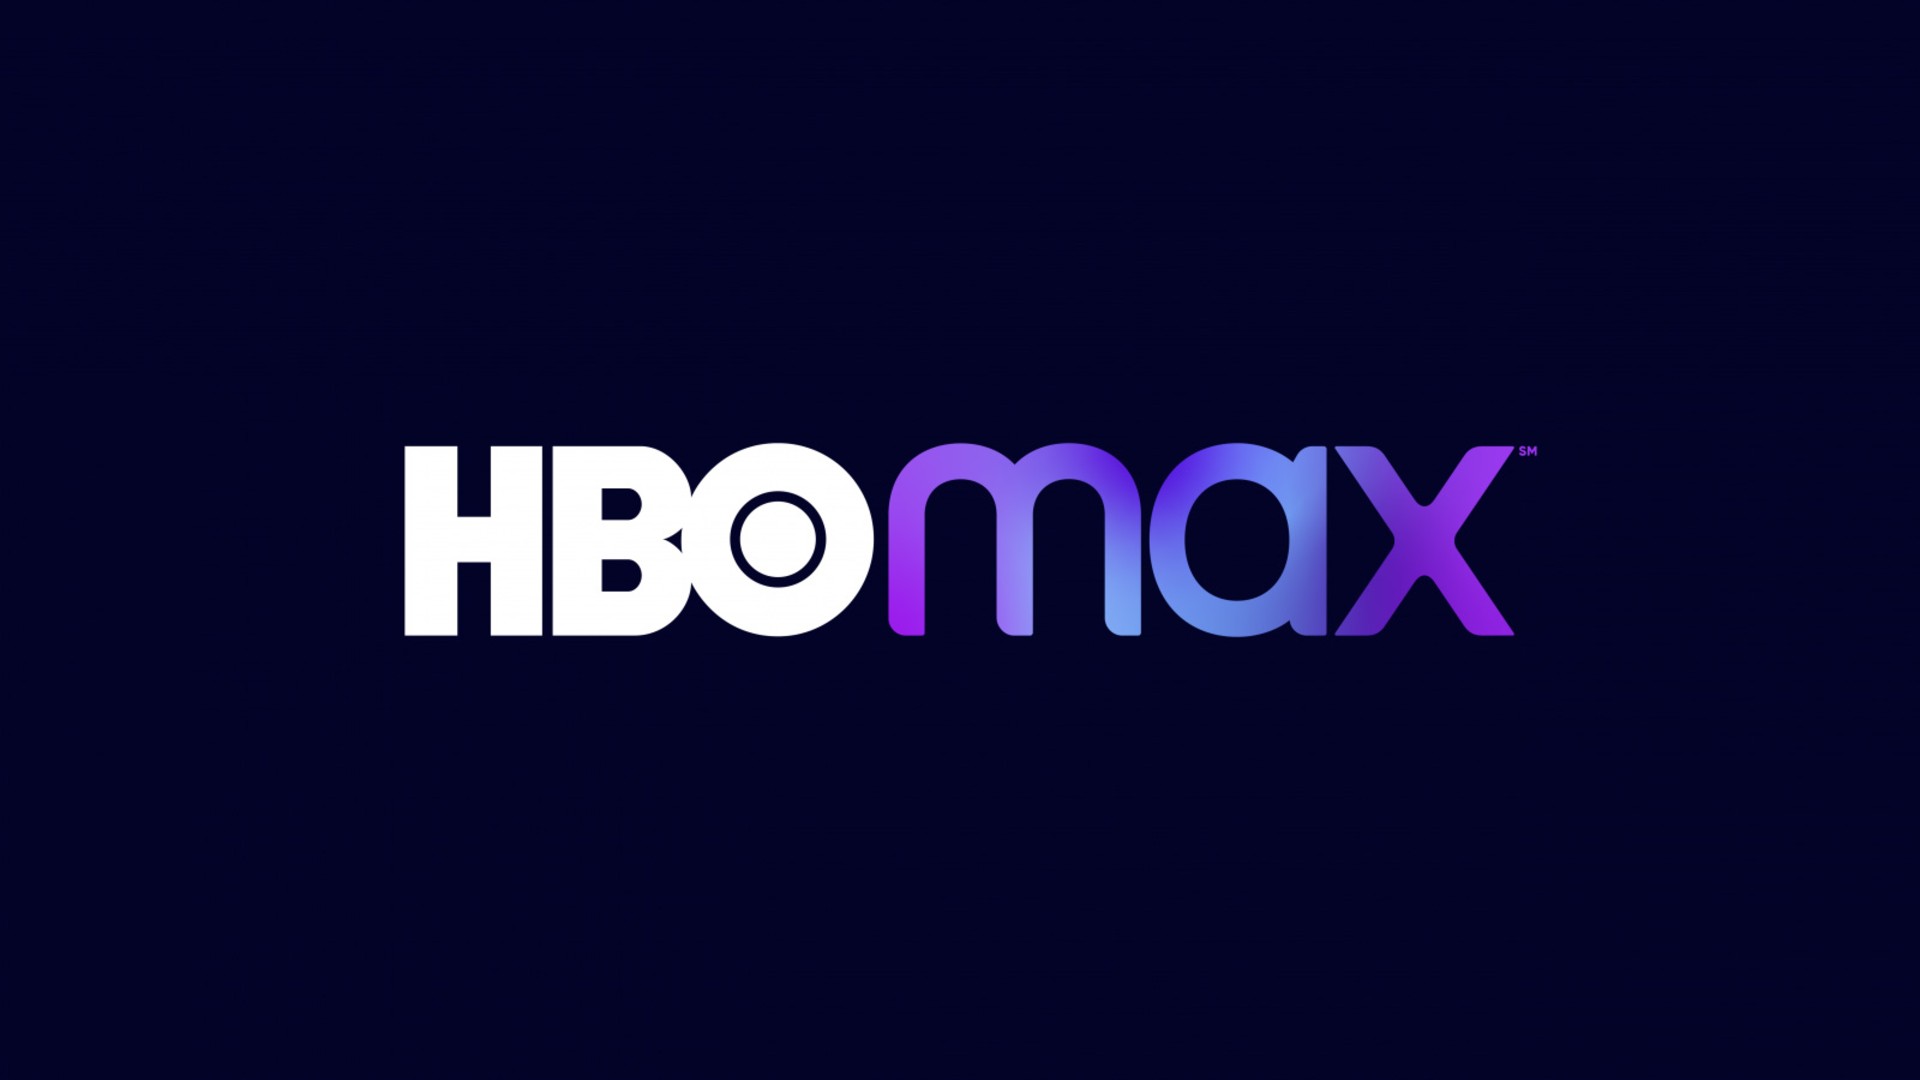 HBO Max oferece assinatura por R$ 9,90 por dois meses na Black Friday